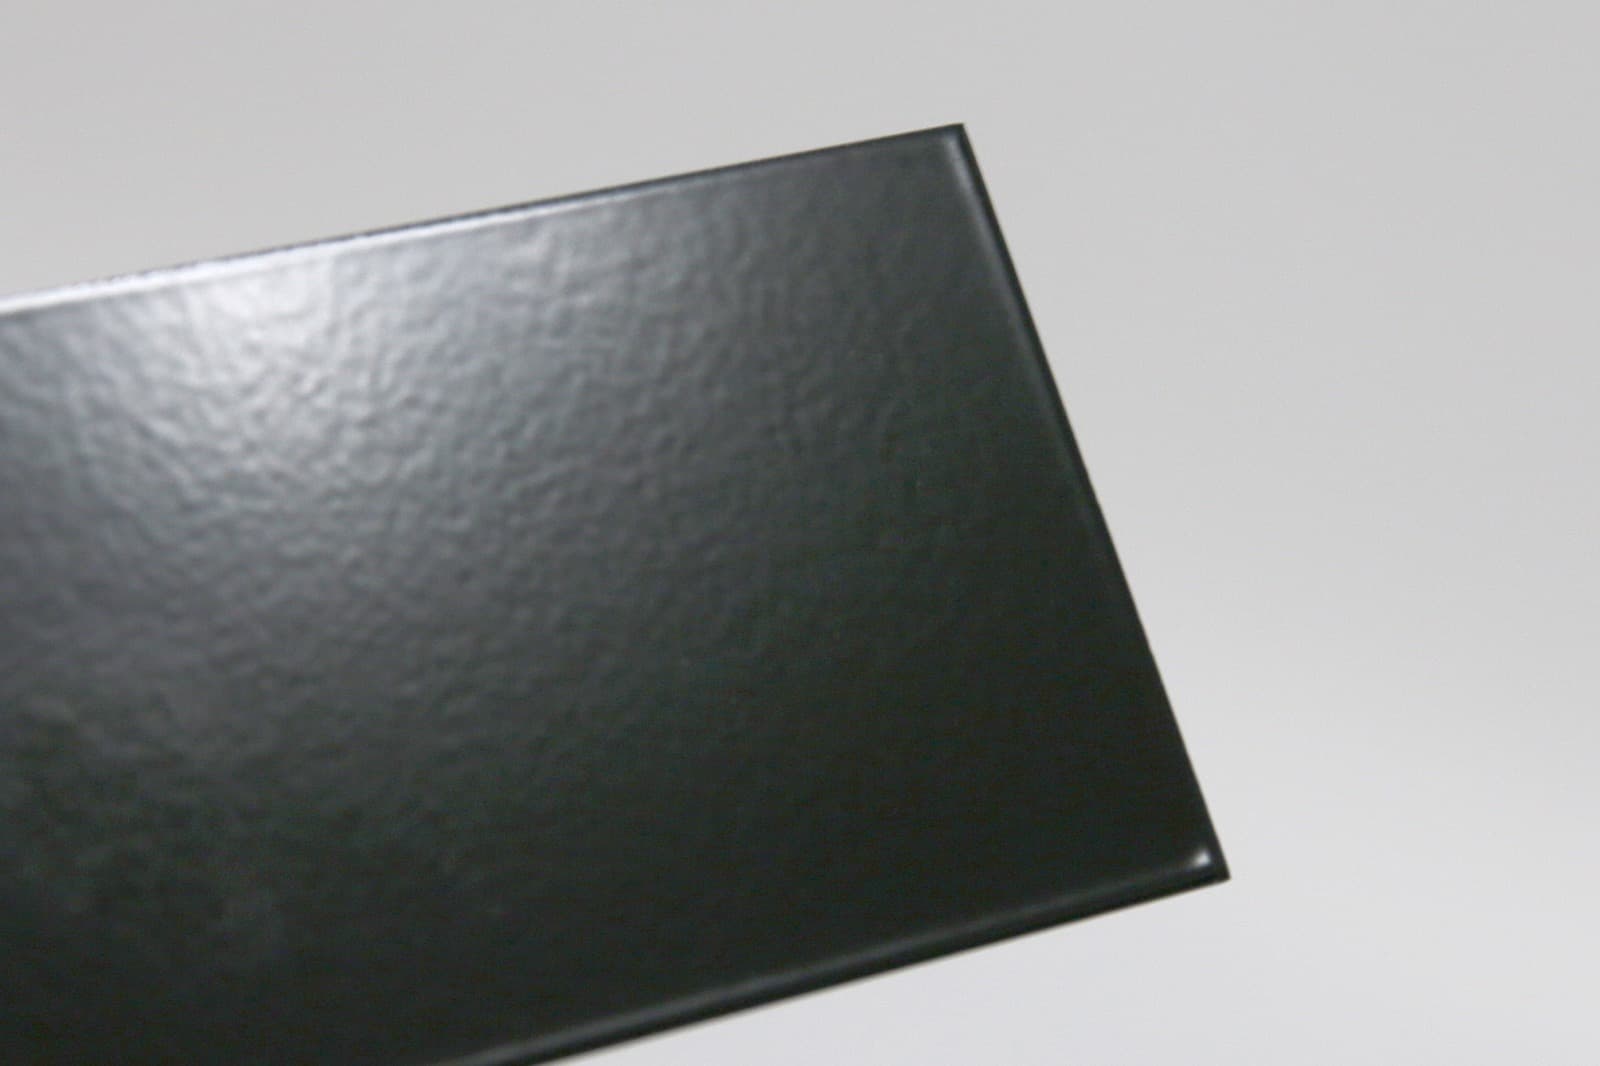 キューブ型レンジフード 照明付き W900×H500 ブラック KB-KC019-14-G162 質感見本。ツヤがあります